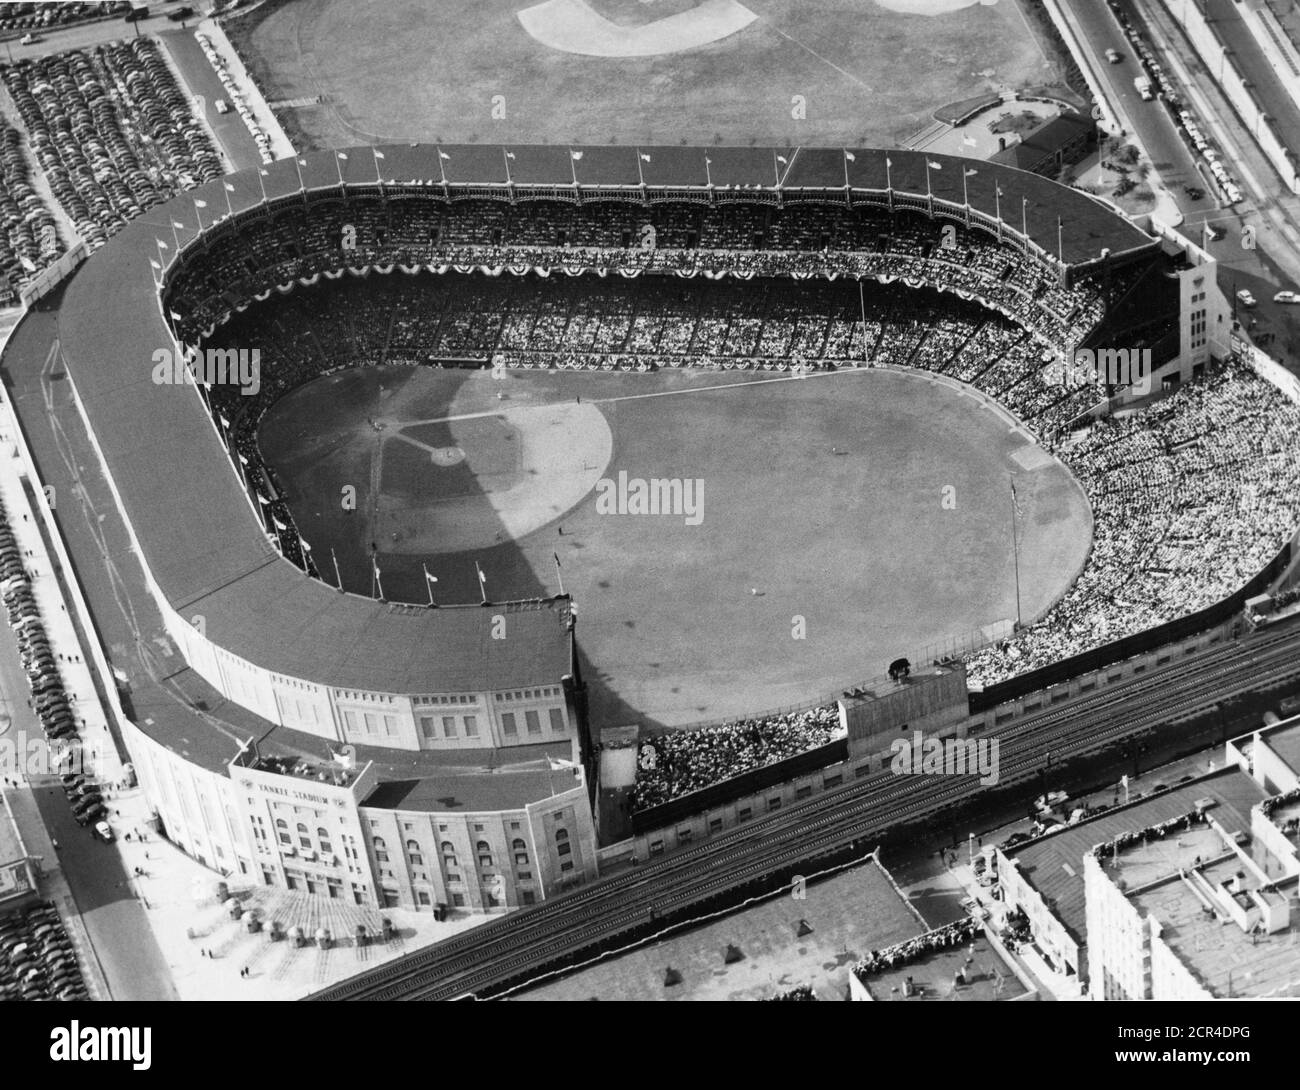 Luftaufnahme des Yankee Stadions mit einem Publikum mit voller Kapazität während eines Baseballspiels, New York, NY, 1954. (Foto von RBM Vintage Images) Stockfoto